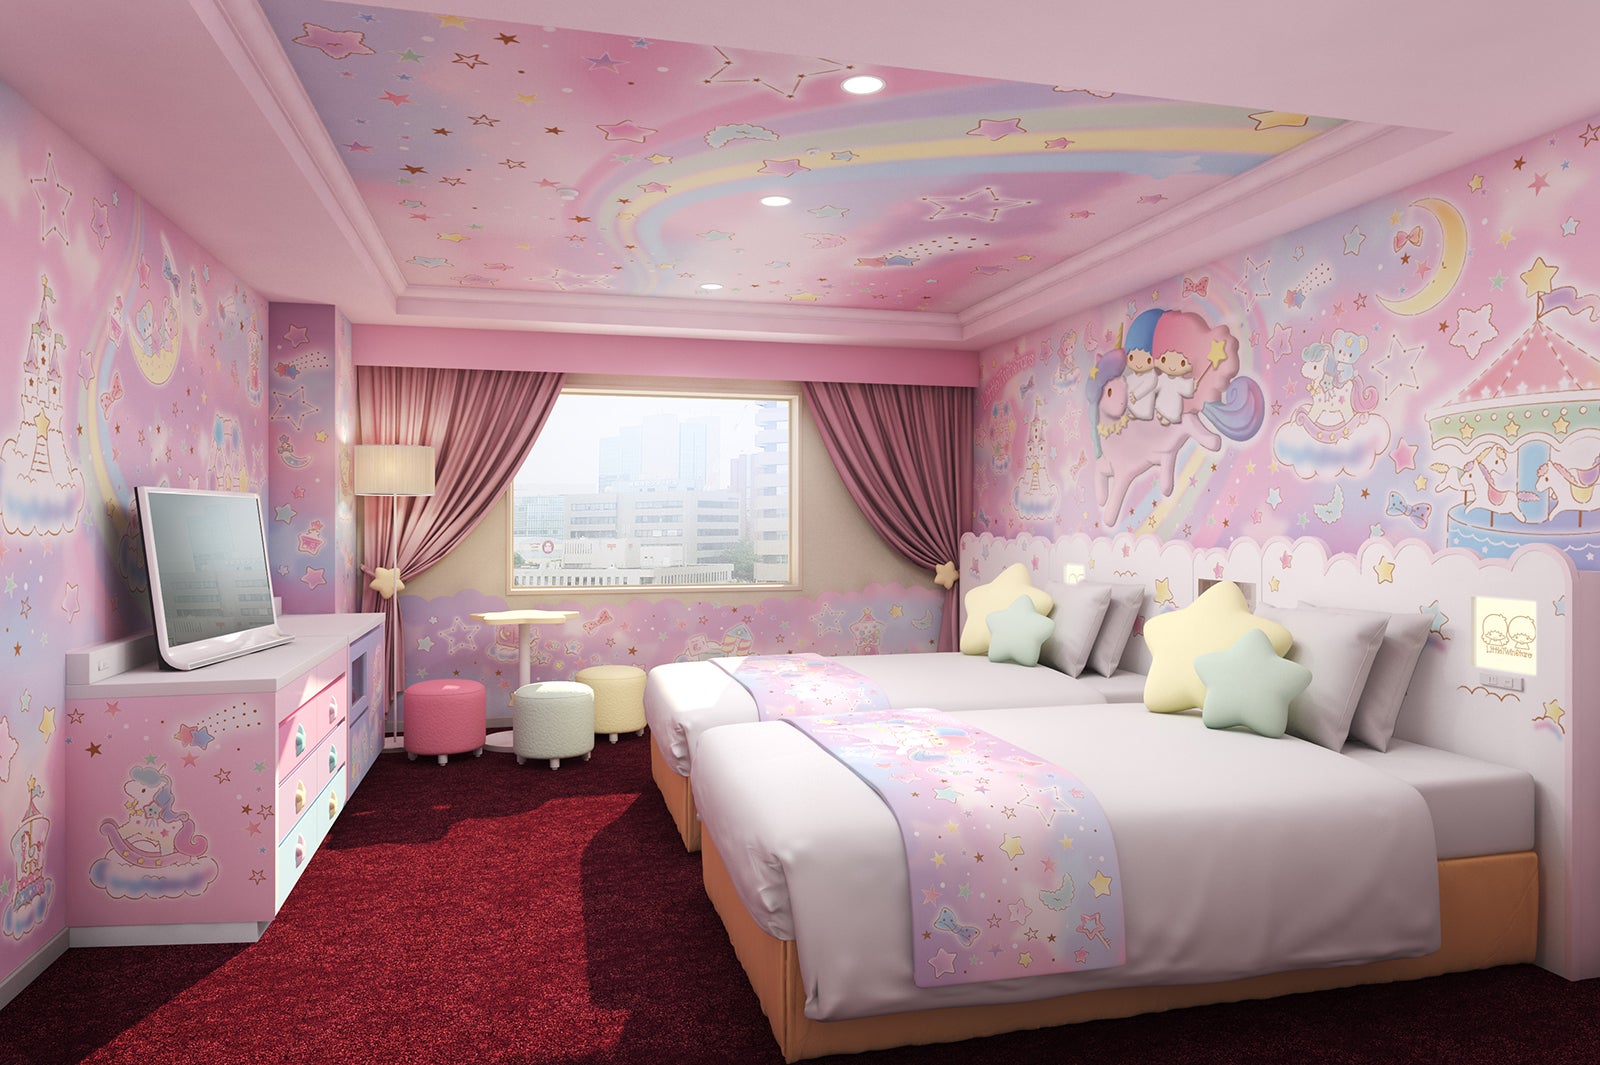 京王プラザホテル多摩 世界初キキララ マイメロ客室を新設 女子旅プレス